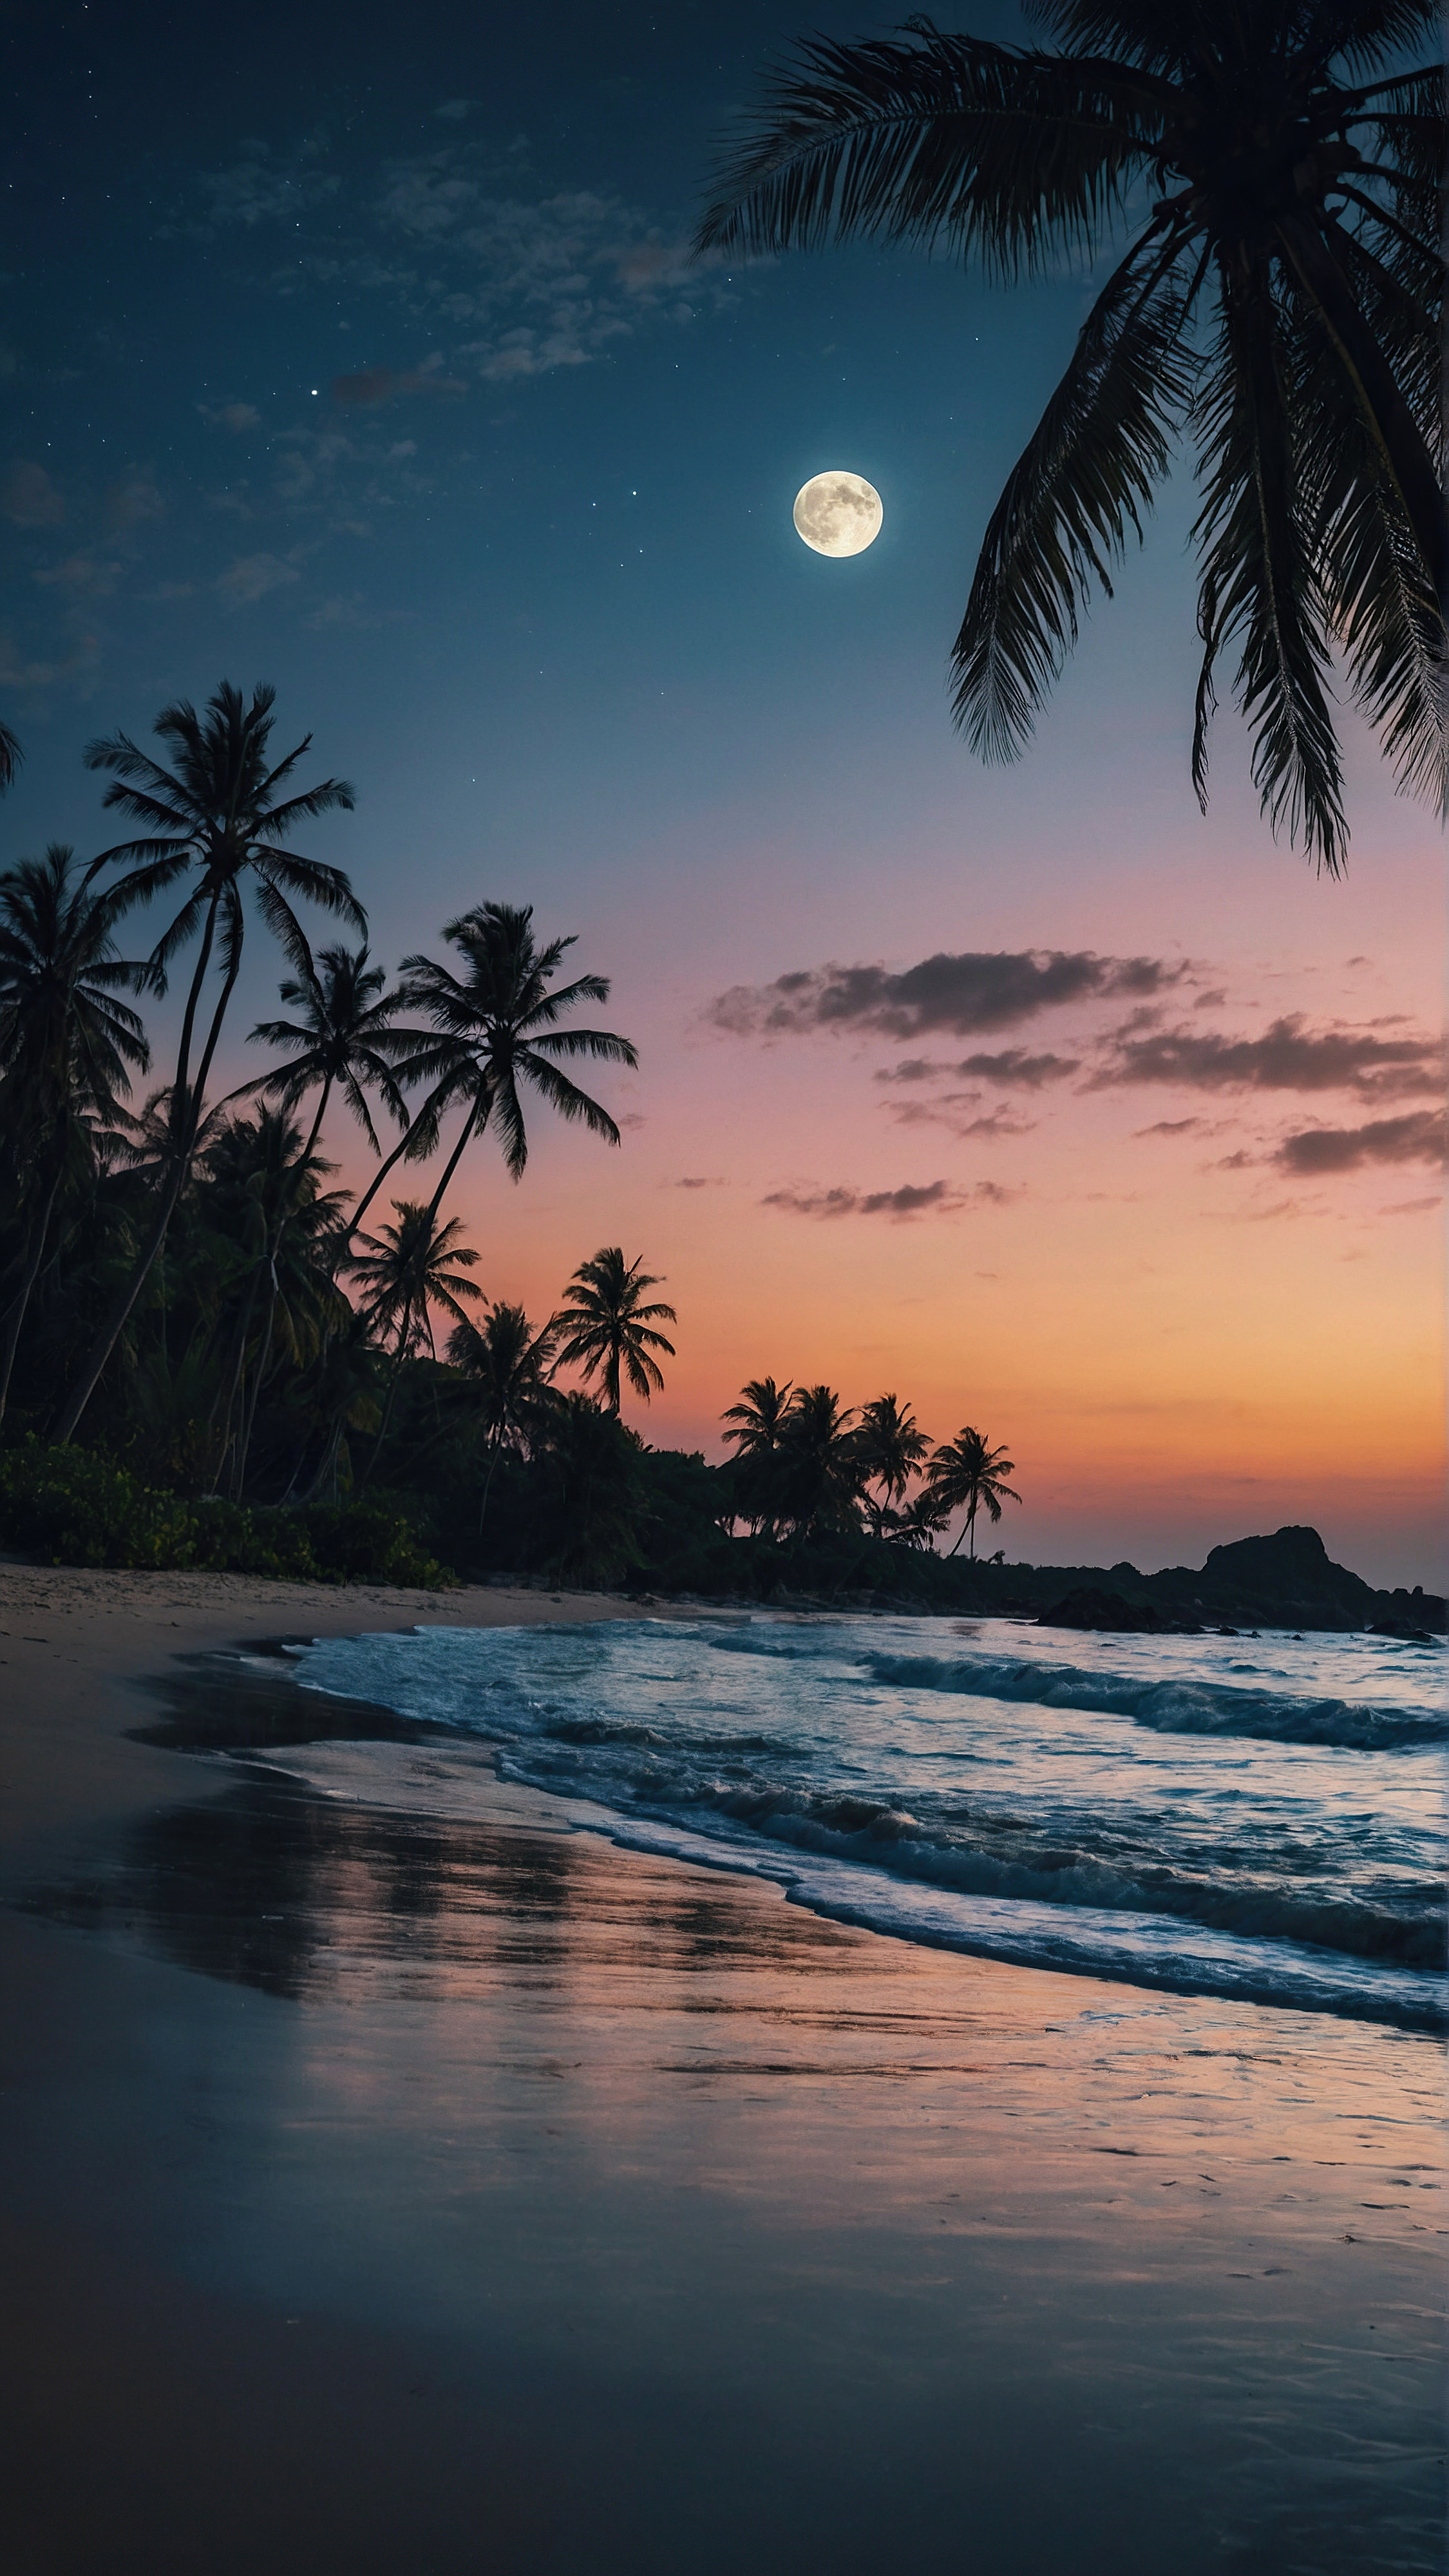 Découvrez le charme tropical de notre arrière-plan pour iPhone en 4K, où une grande lune illumine une scène de plage envoûtante au crépuscule, se reflétant sur les vagues qui clapotent doucement et mettant en valeur les silhouettes des palmiers dans ce paysage serein.